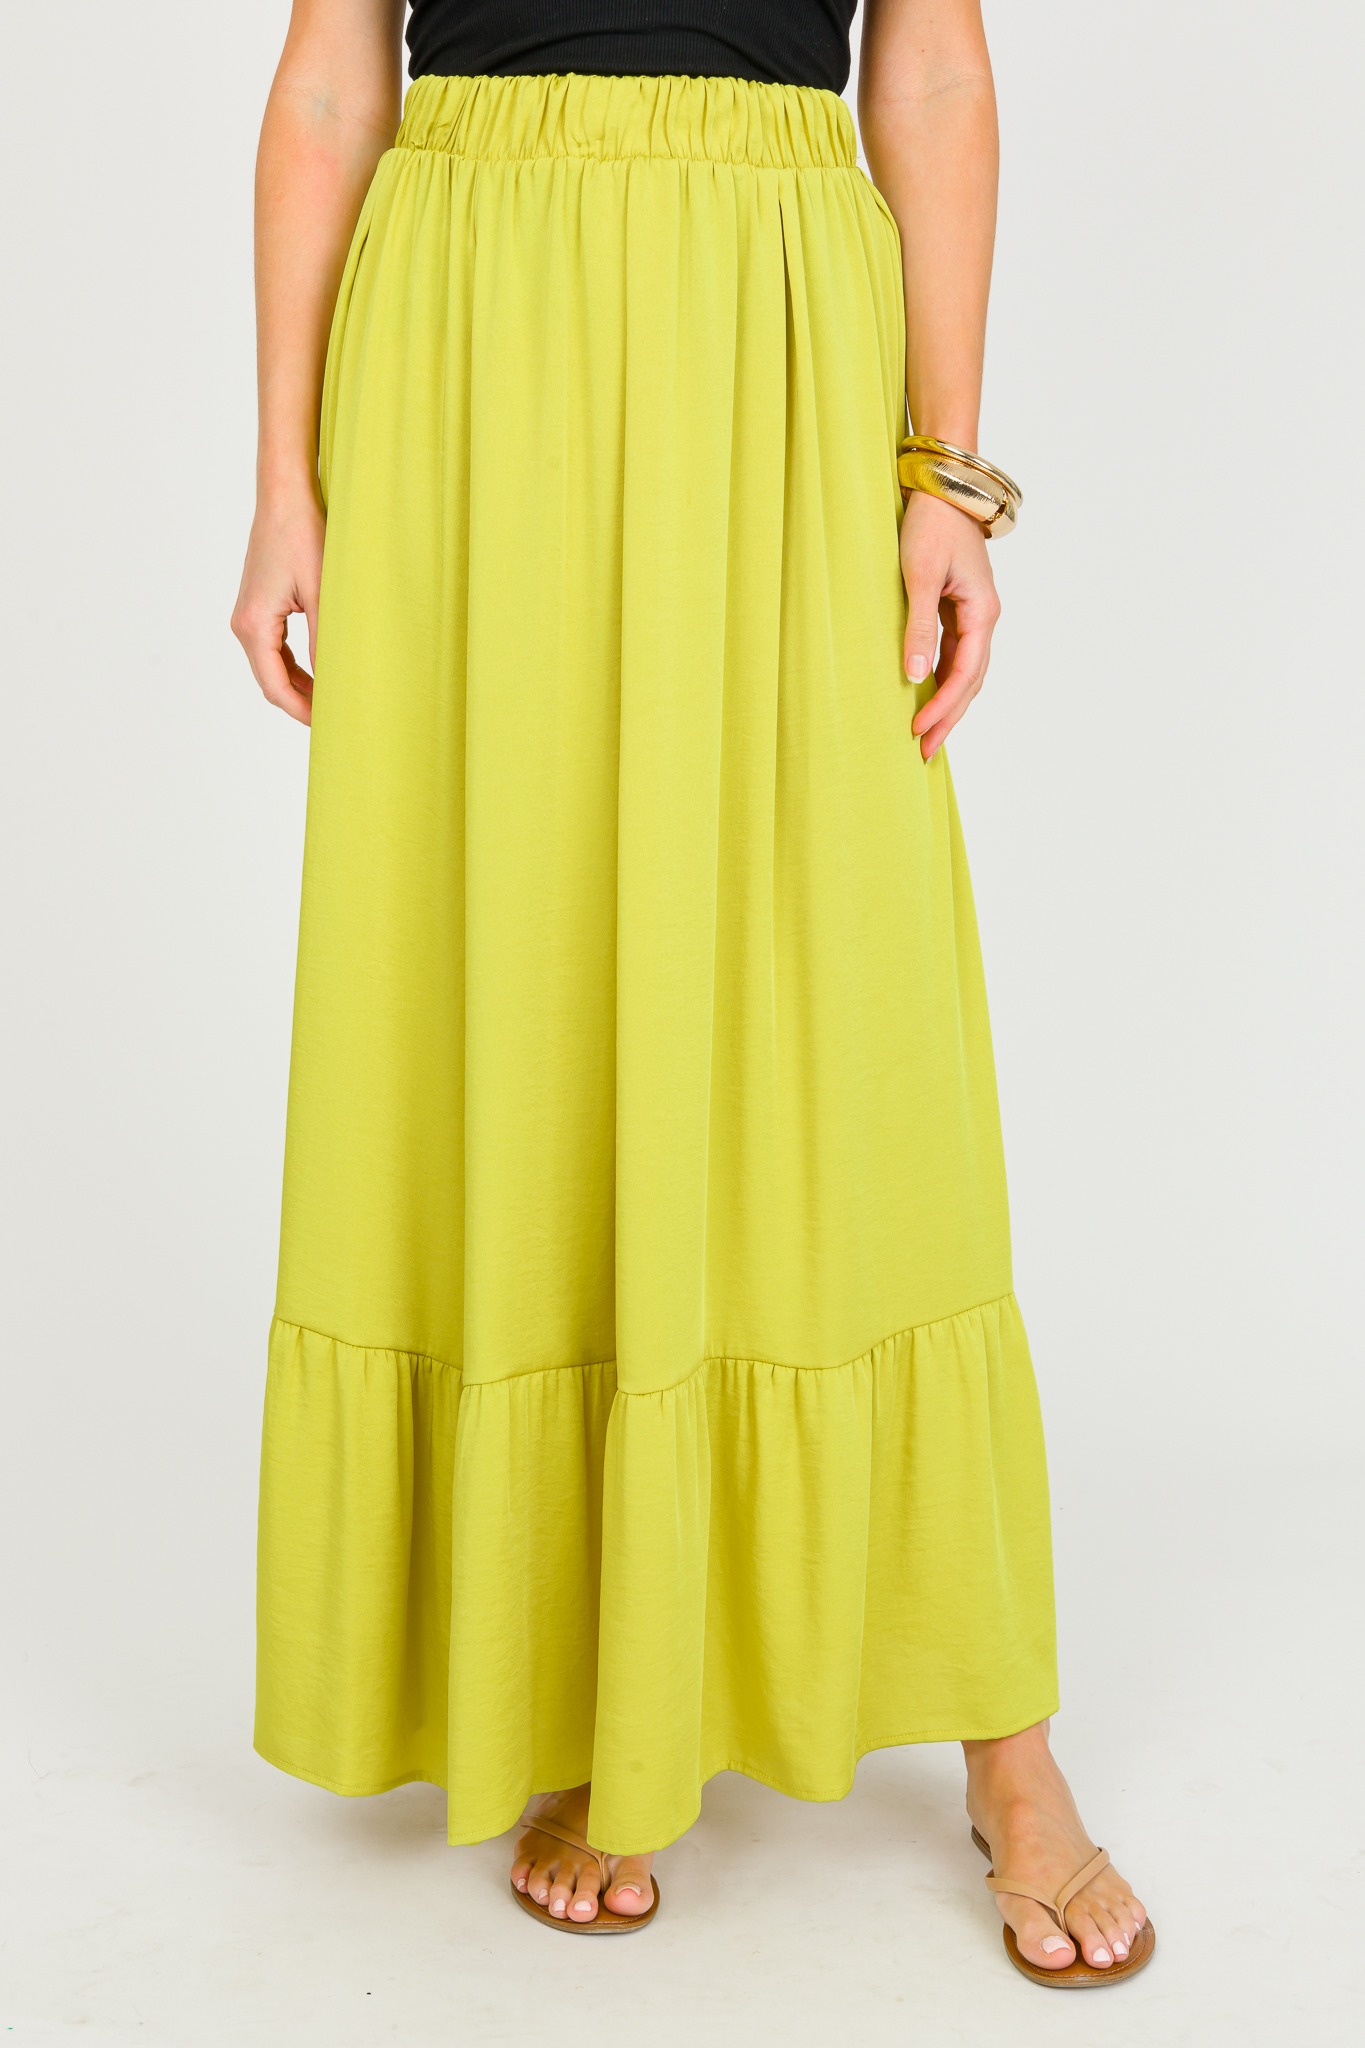 Silk Tiered Skirt, Chartreuse - 0326-124p.jpg